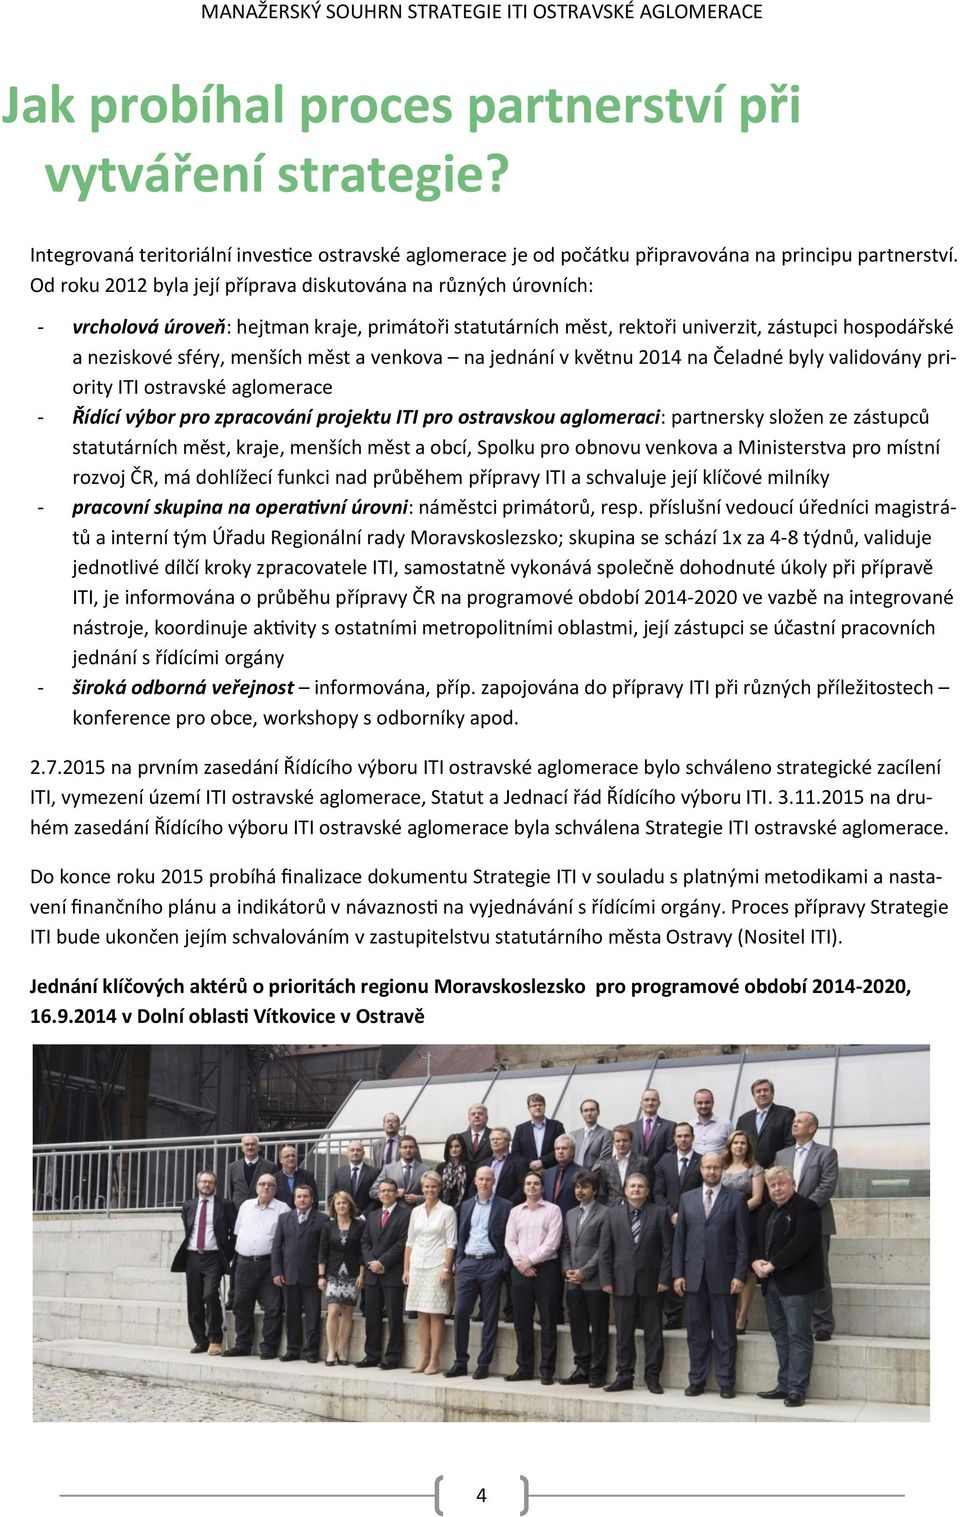 měst a venkova na jednání v květnu 2014 na Čeladné byly validovány priority ITI ostravské aglomerace - Řídící výbor pro zpracování projektu ITI pro ostravskou aglomeraci: partnersky složen ze